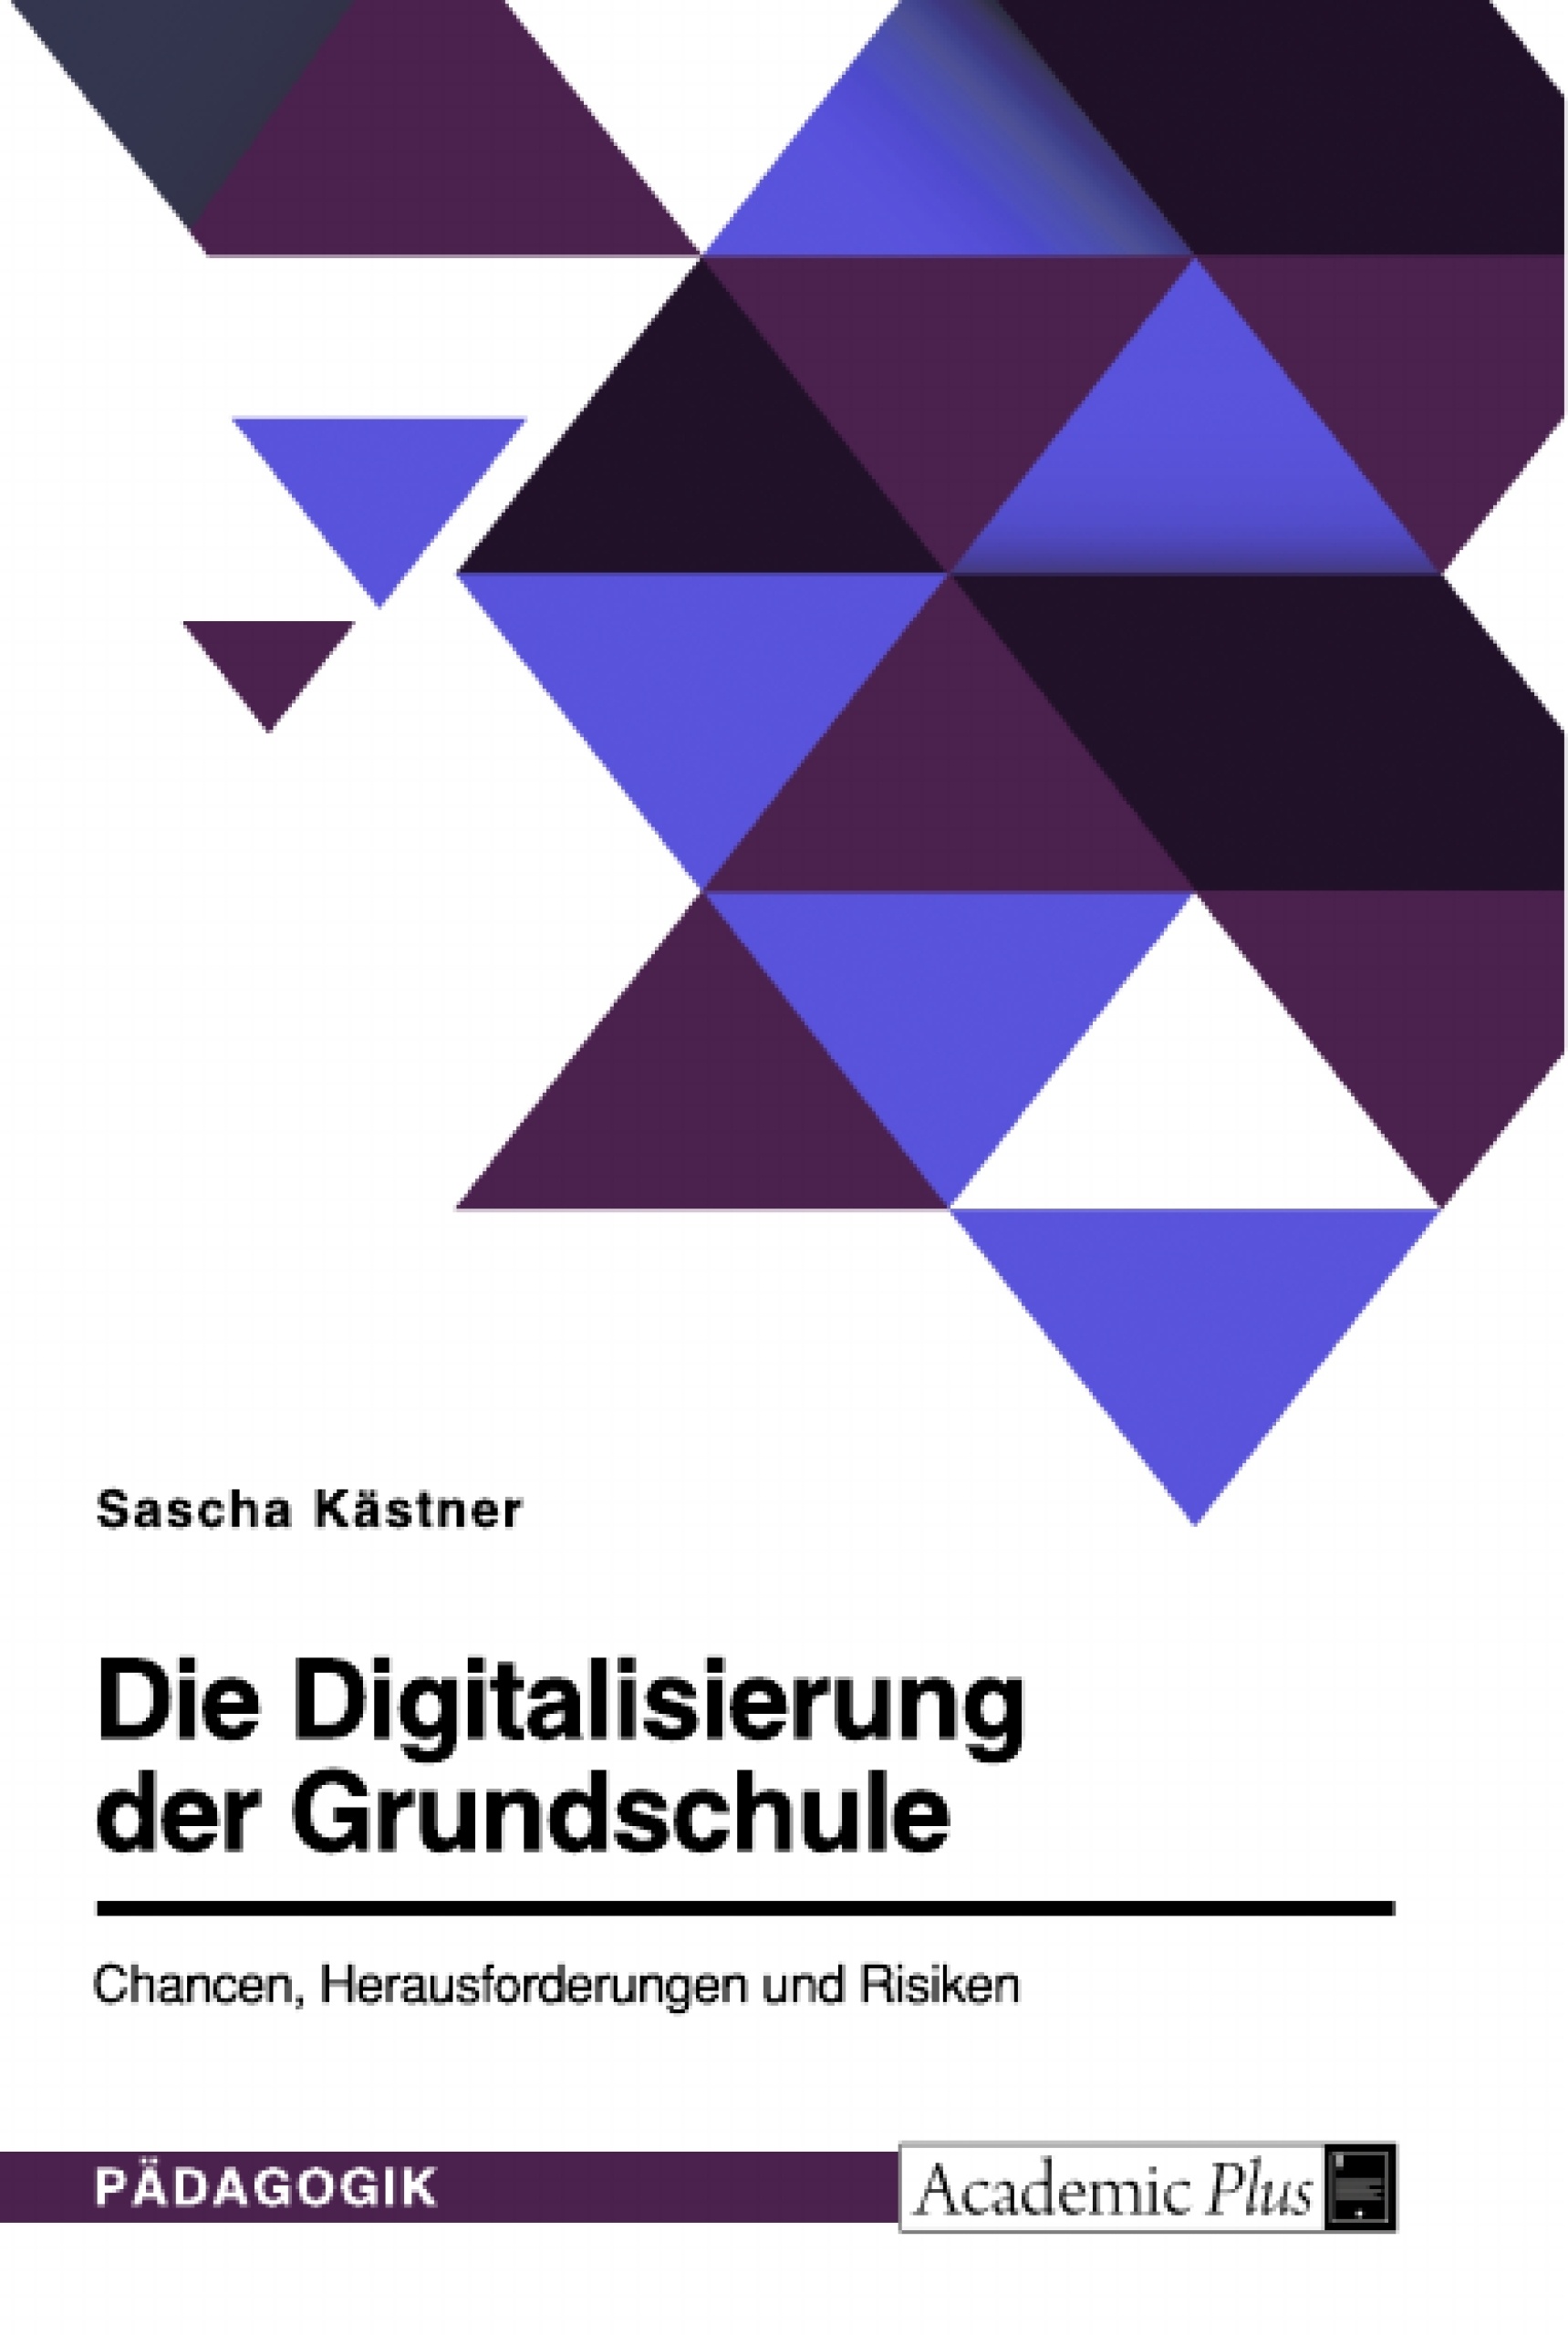 Titel: Die Digitalisierung der Grundschule. Chancen, Herausforderungen und Risiken